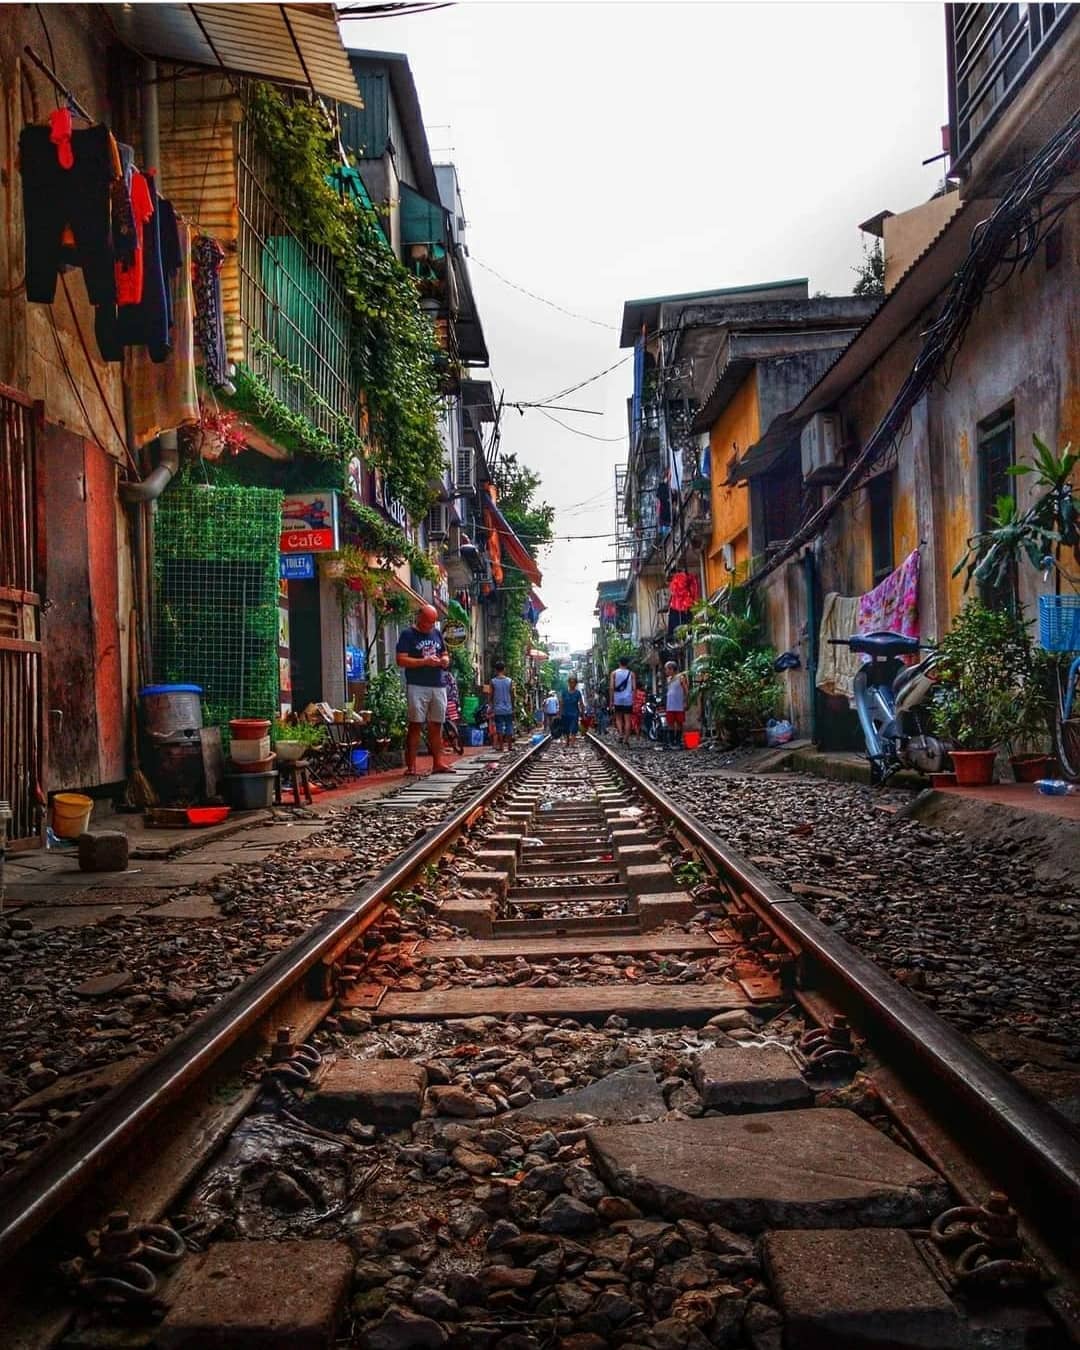 Vientam, Hanoi